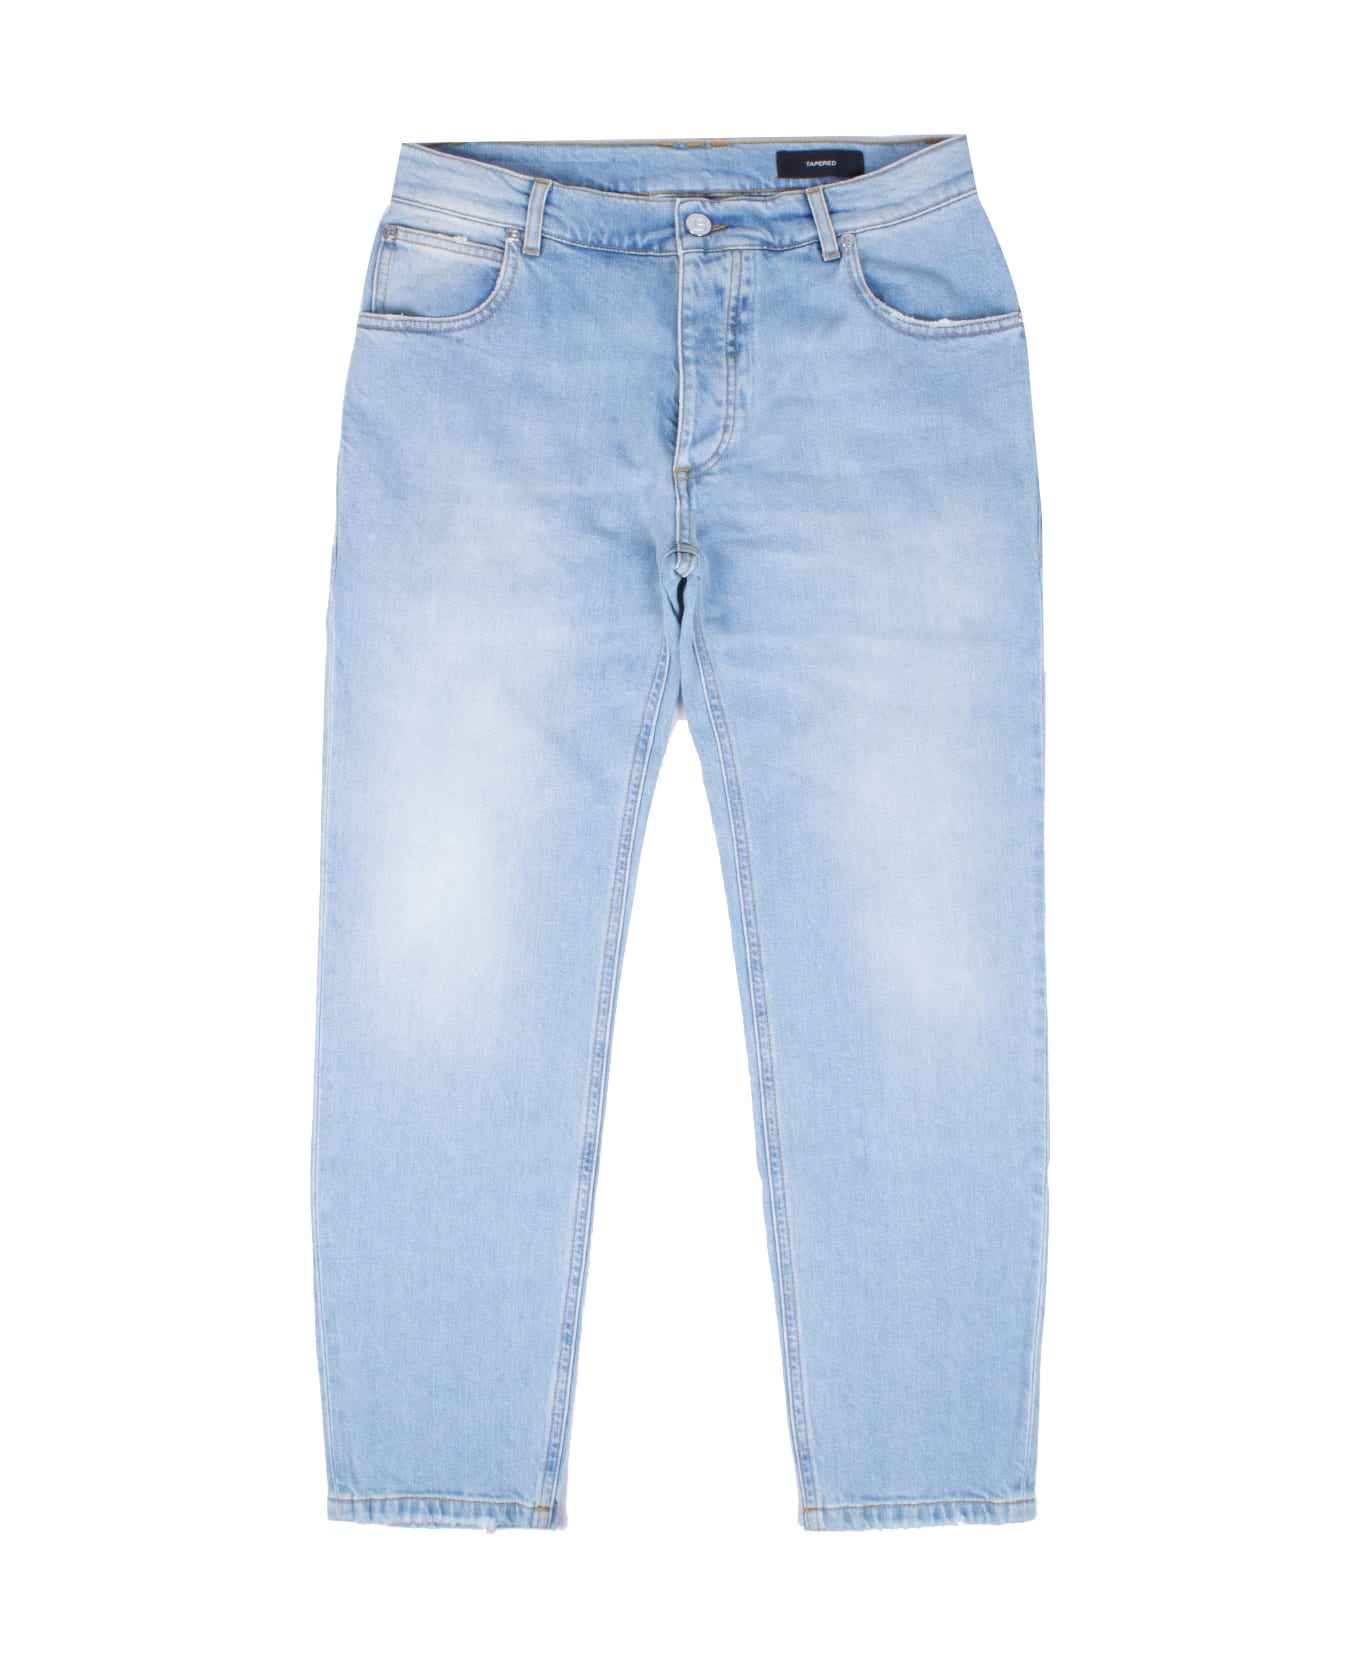 Balmain Jeans - Light blue